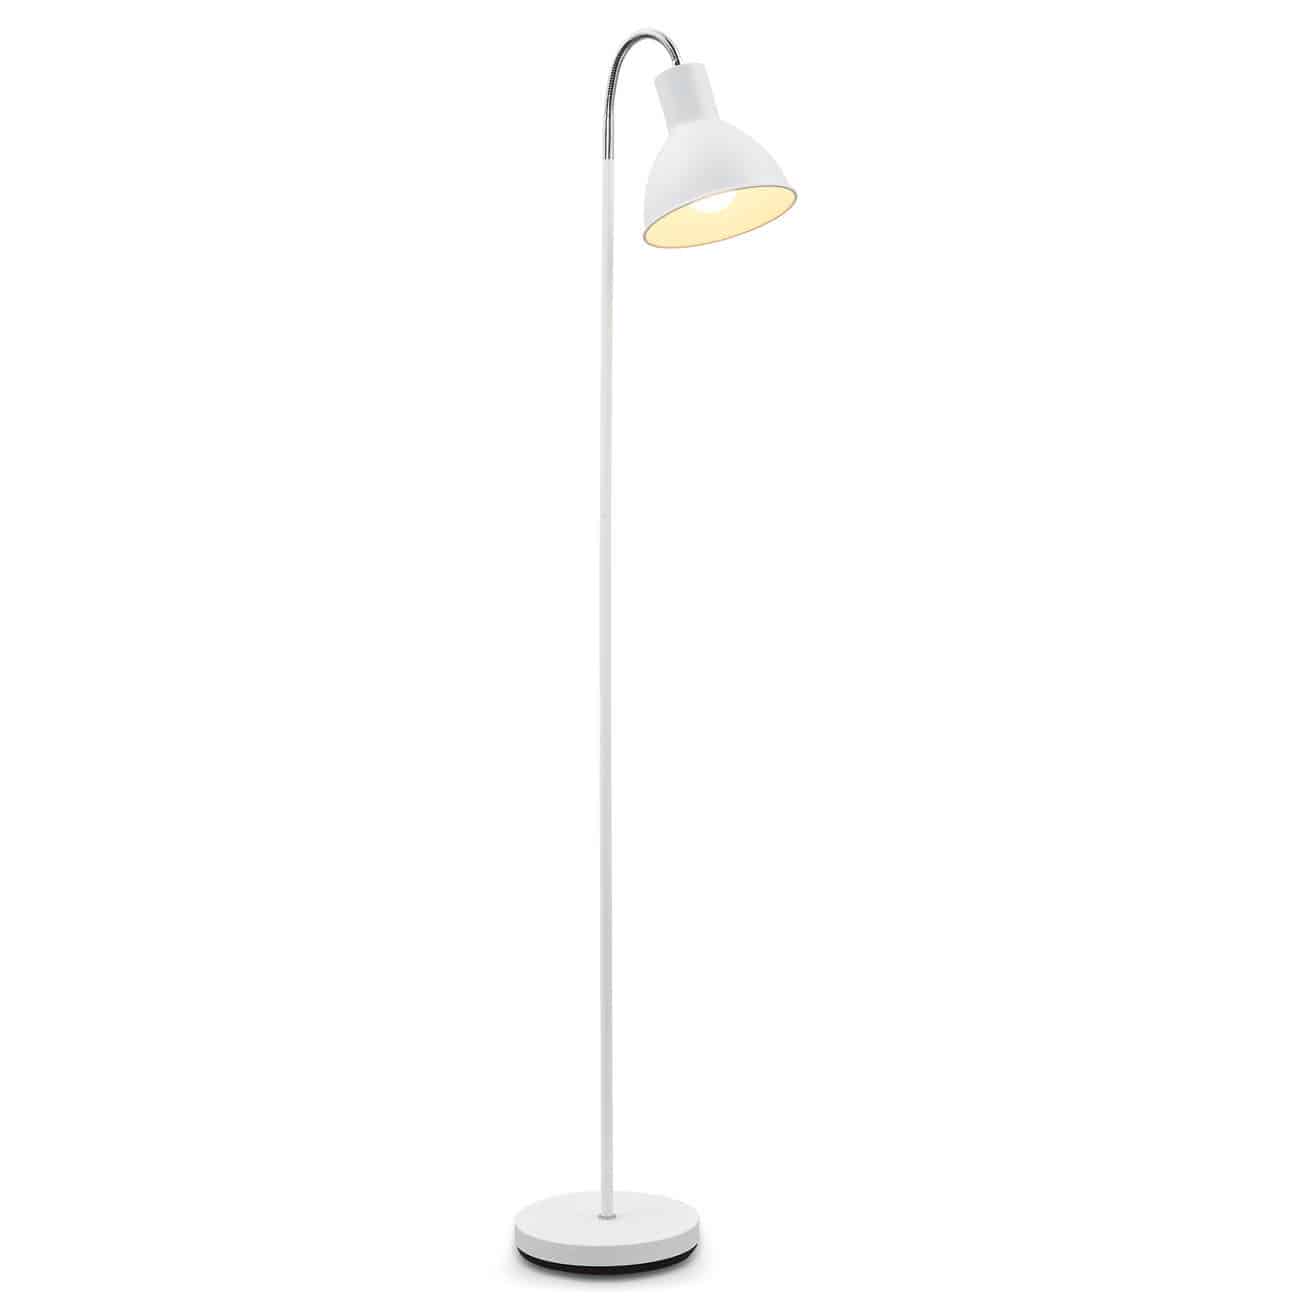  Stehlampe Industrial Design schwenkbar weiß E27 - 1